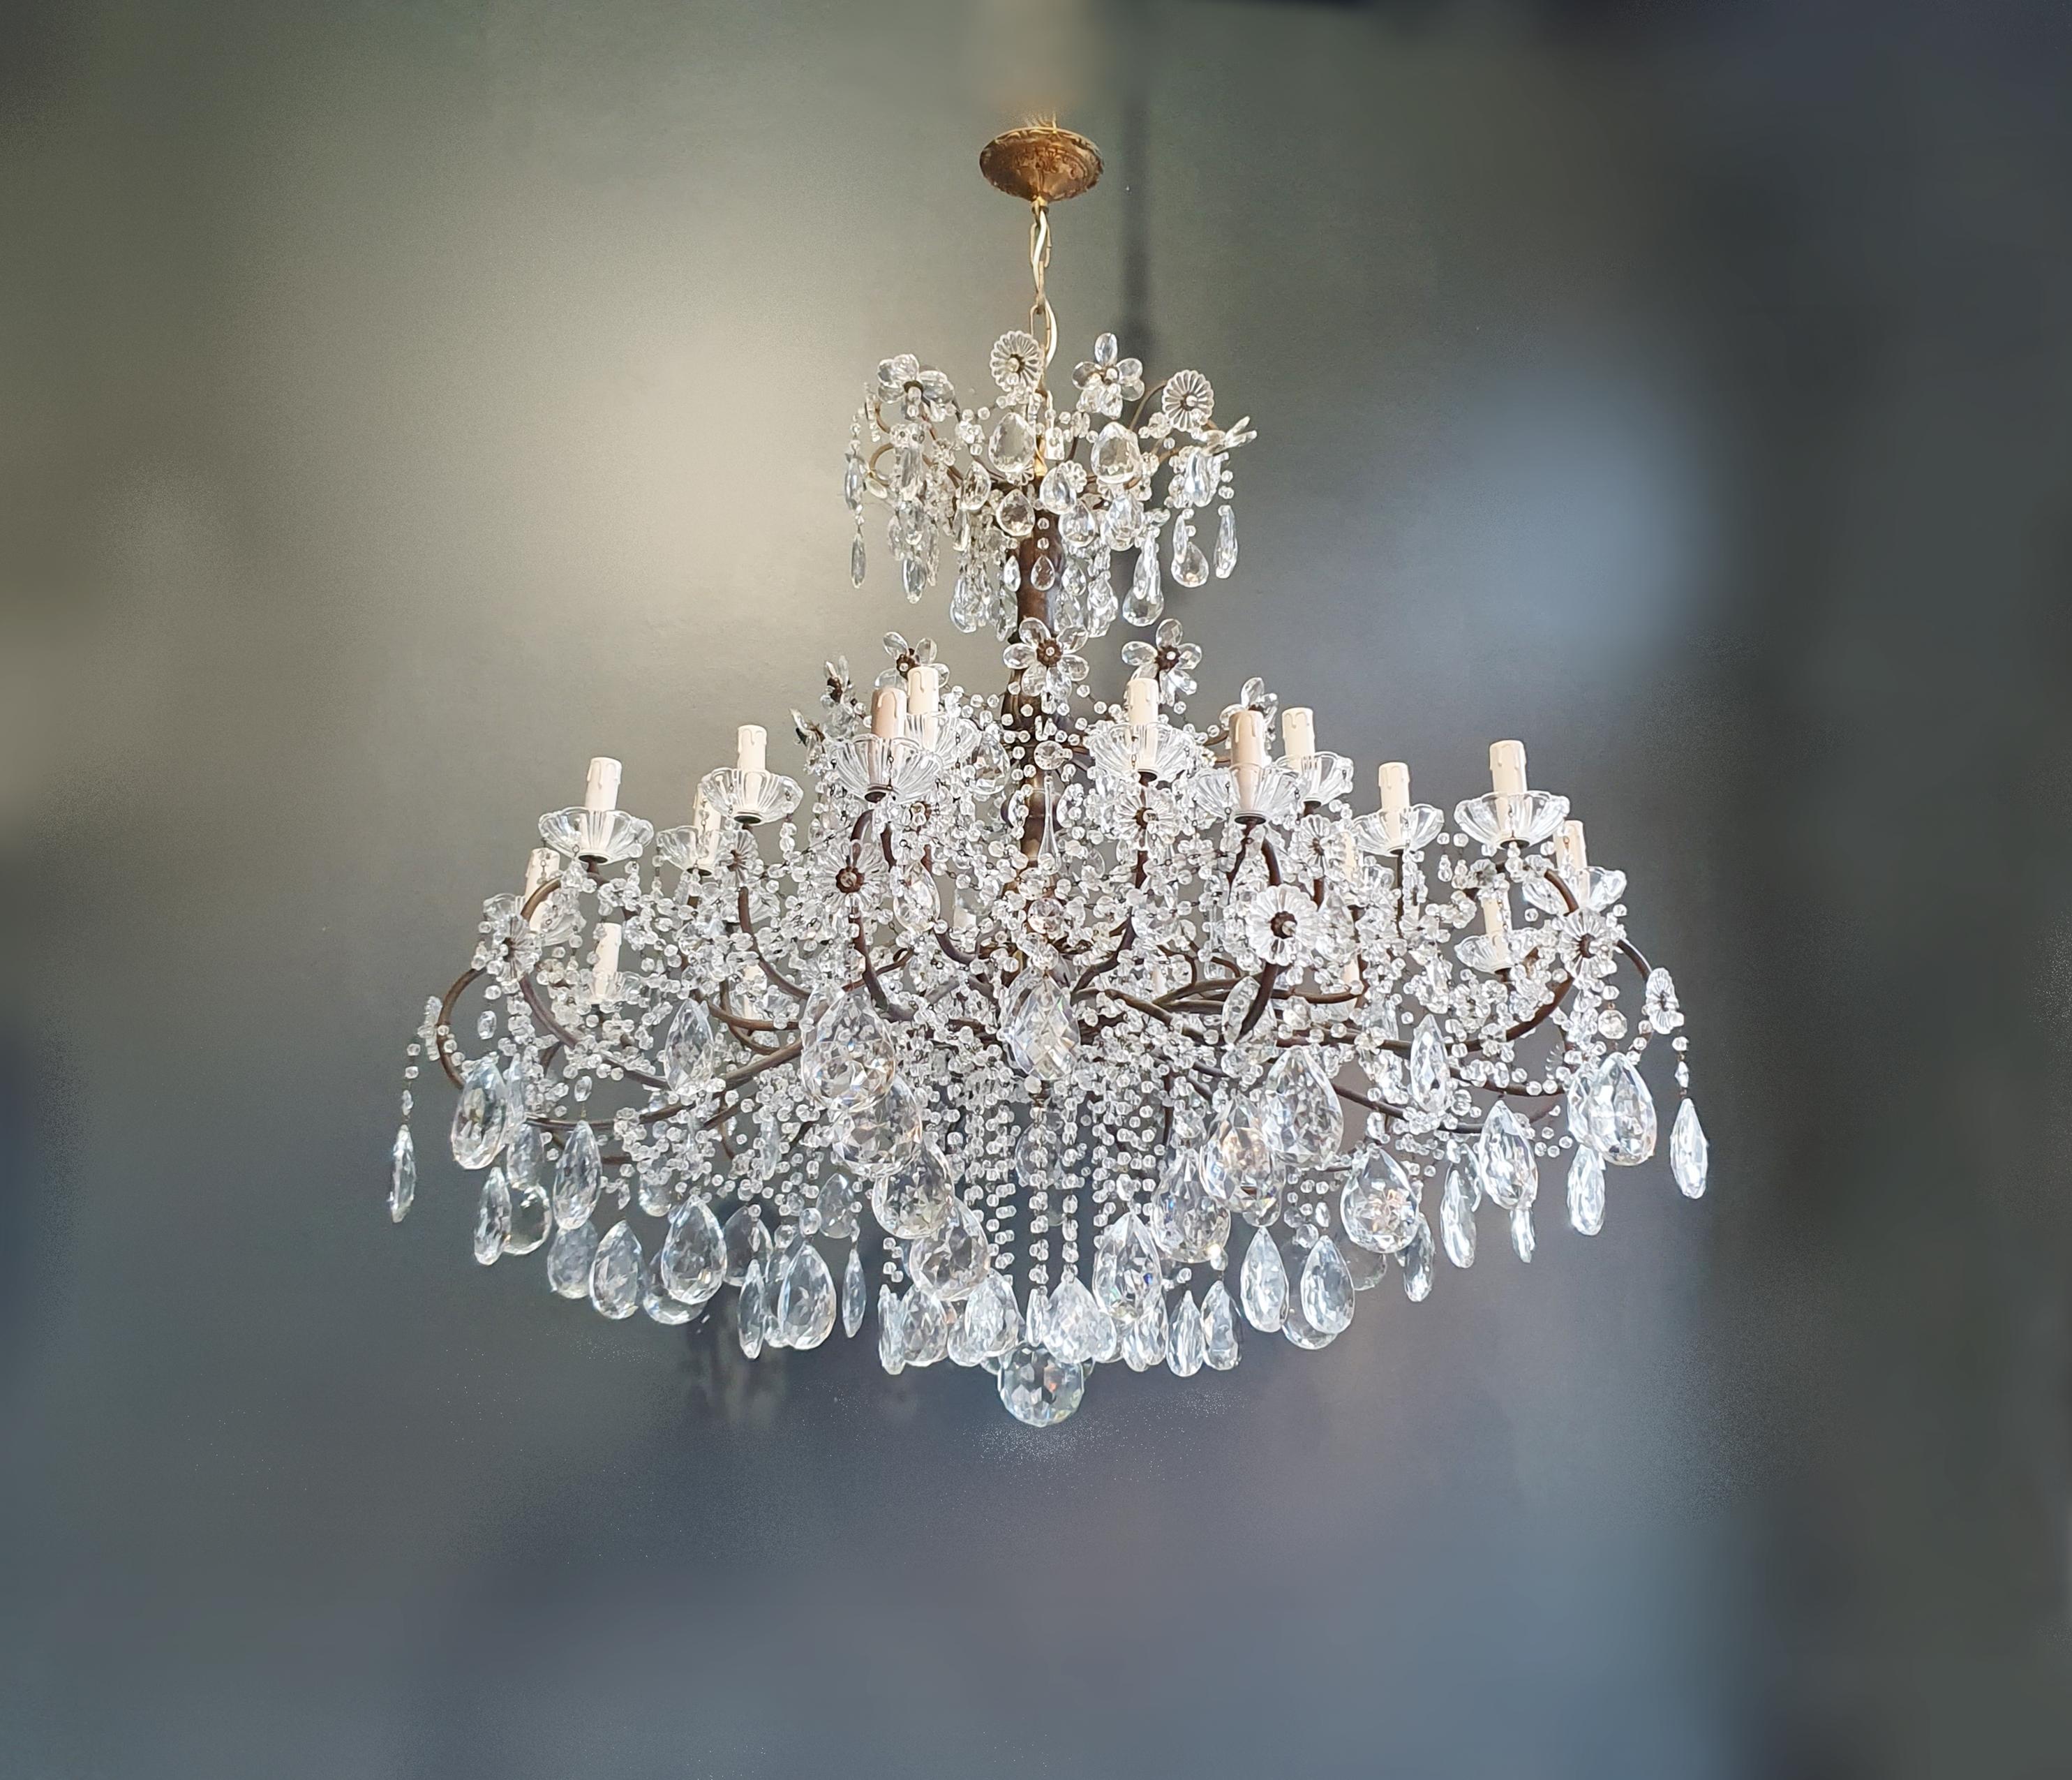 Huge Candelabrum Crystal Antique Chandelier Ceiling Lustre Art Nouveau For Sale 1